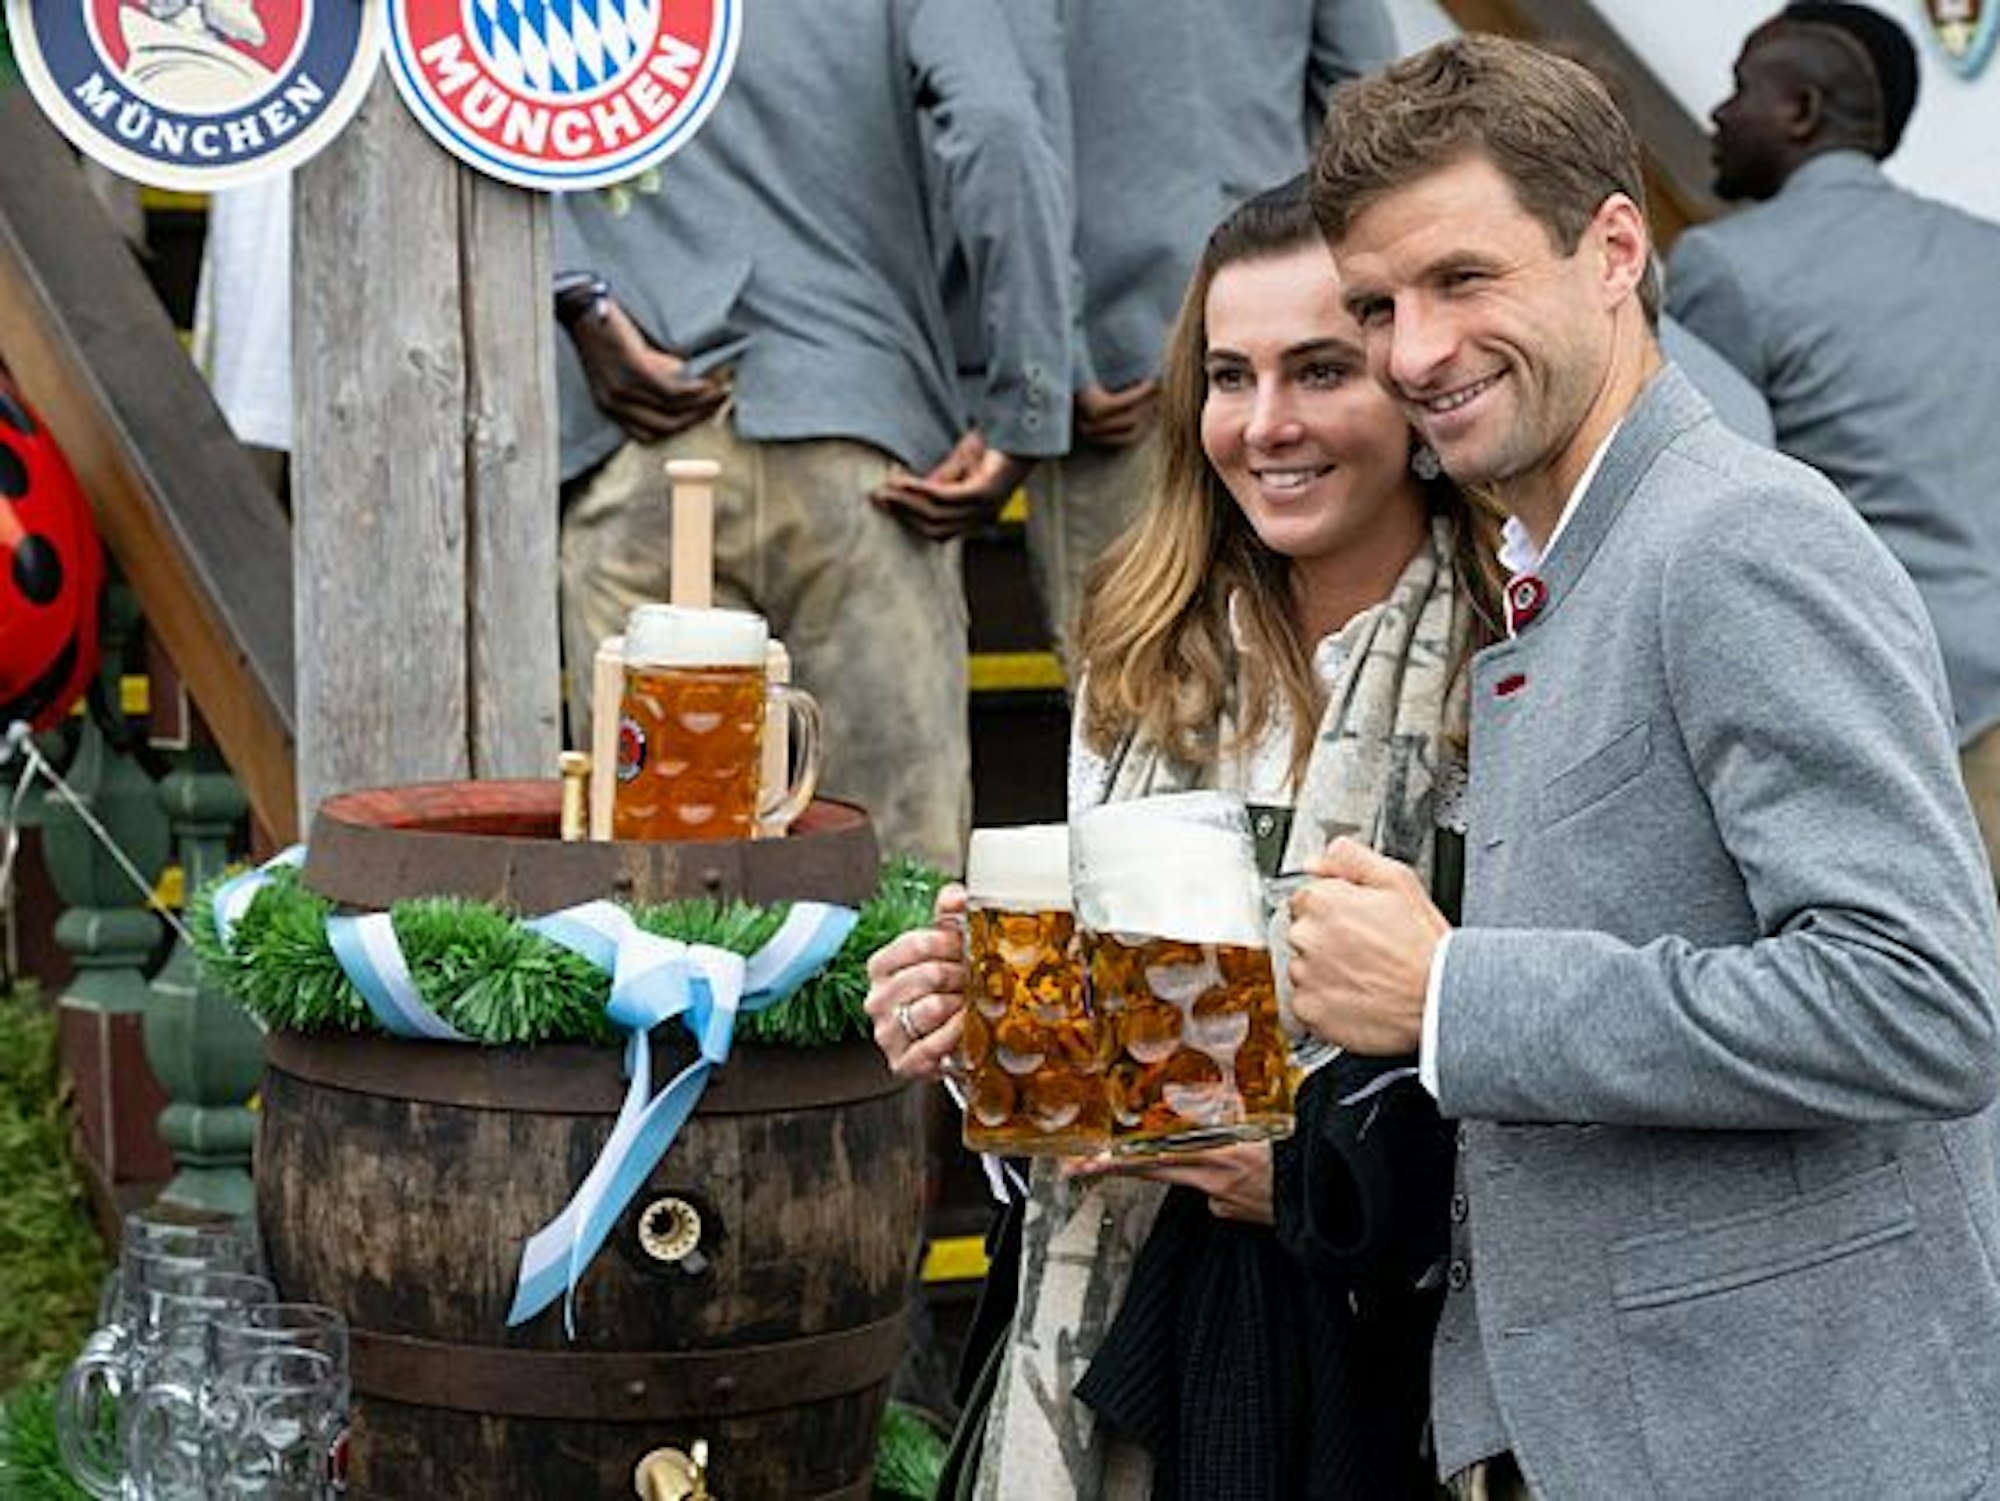 Thomas Müller vom FC Bayern München und seine Frau Lisa kommen in das Käferzelt auf dem Oktoberfest auf der Theresienwiese. Beide halten eine Maß Bier in der Hand und stoßen an.